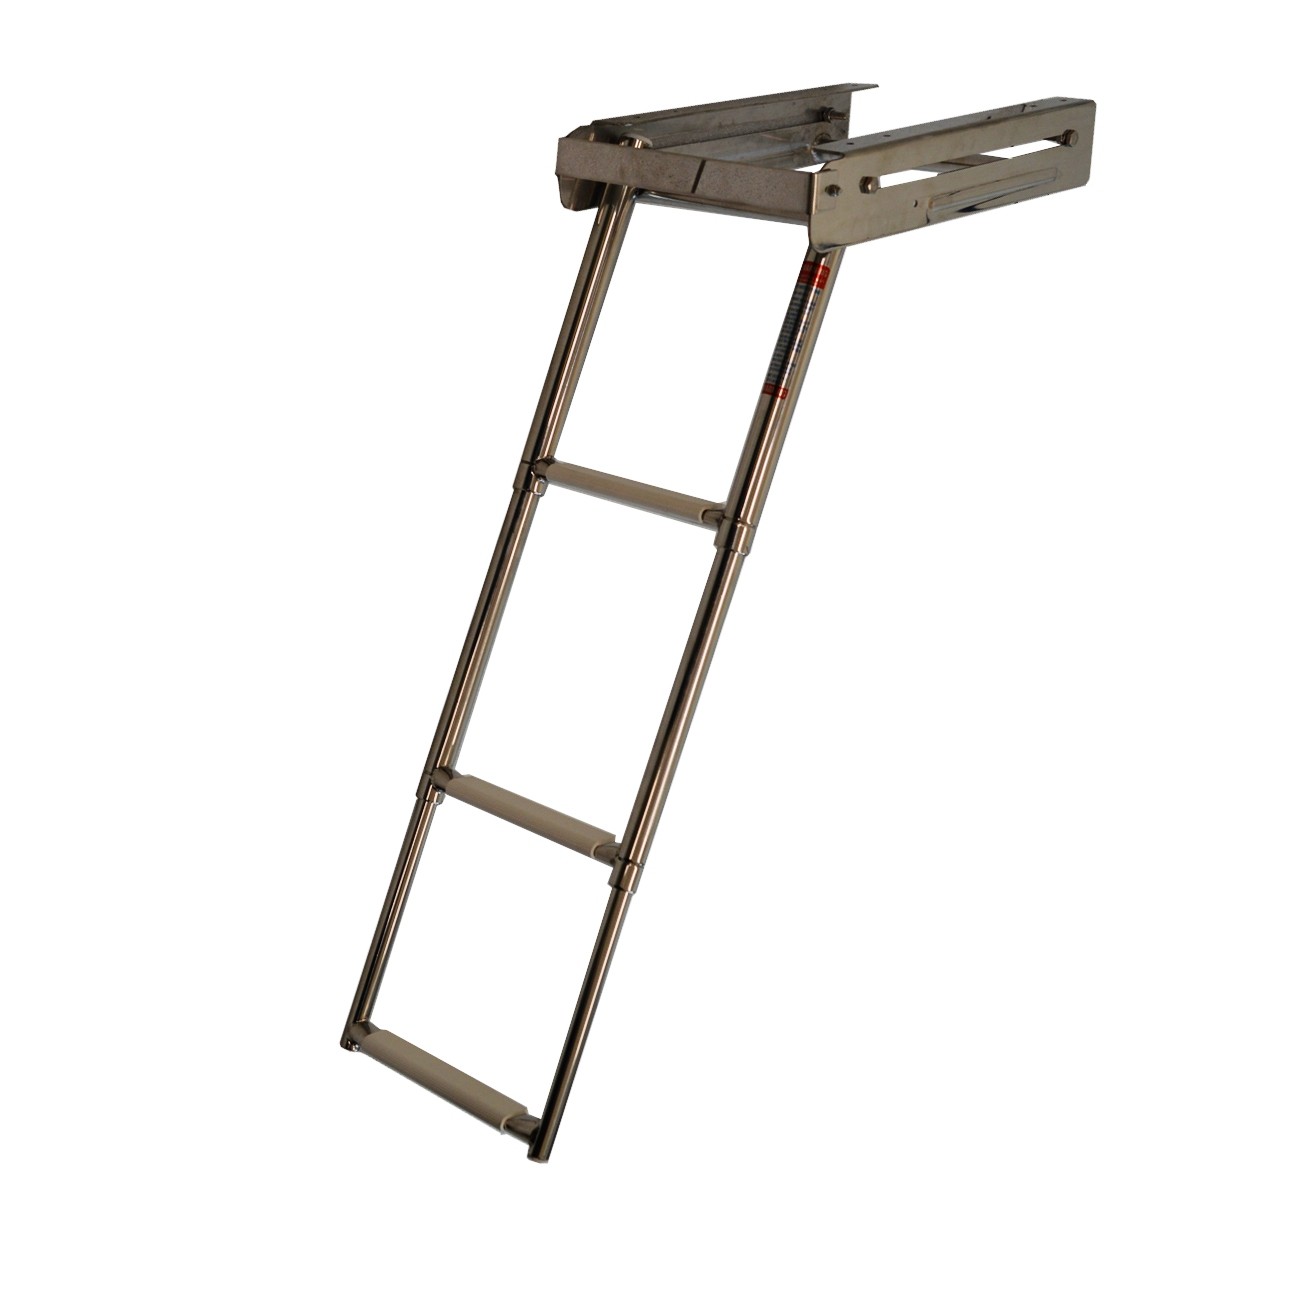 198.09 - Σκάλα Inox Πτυσσόμενη Πλατφόρμας Με 3 Σκαλοπάτια Μήκους 85cm